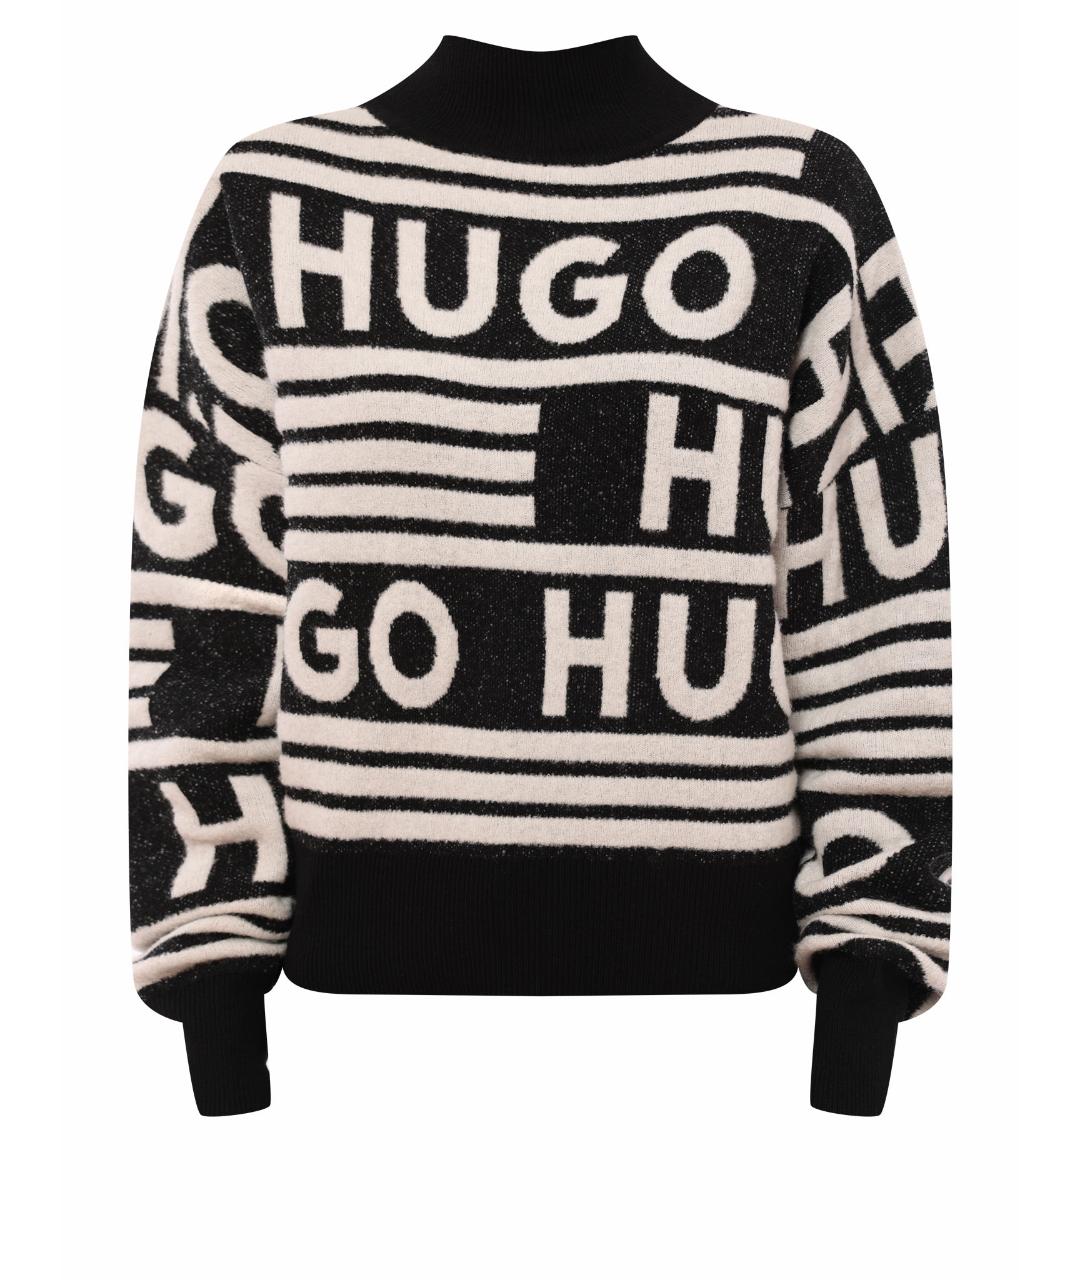 HUGO BOSS Черный джемпер / свитер, фото 1